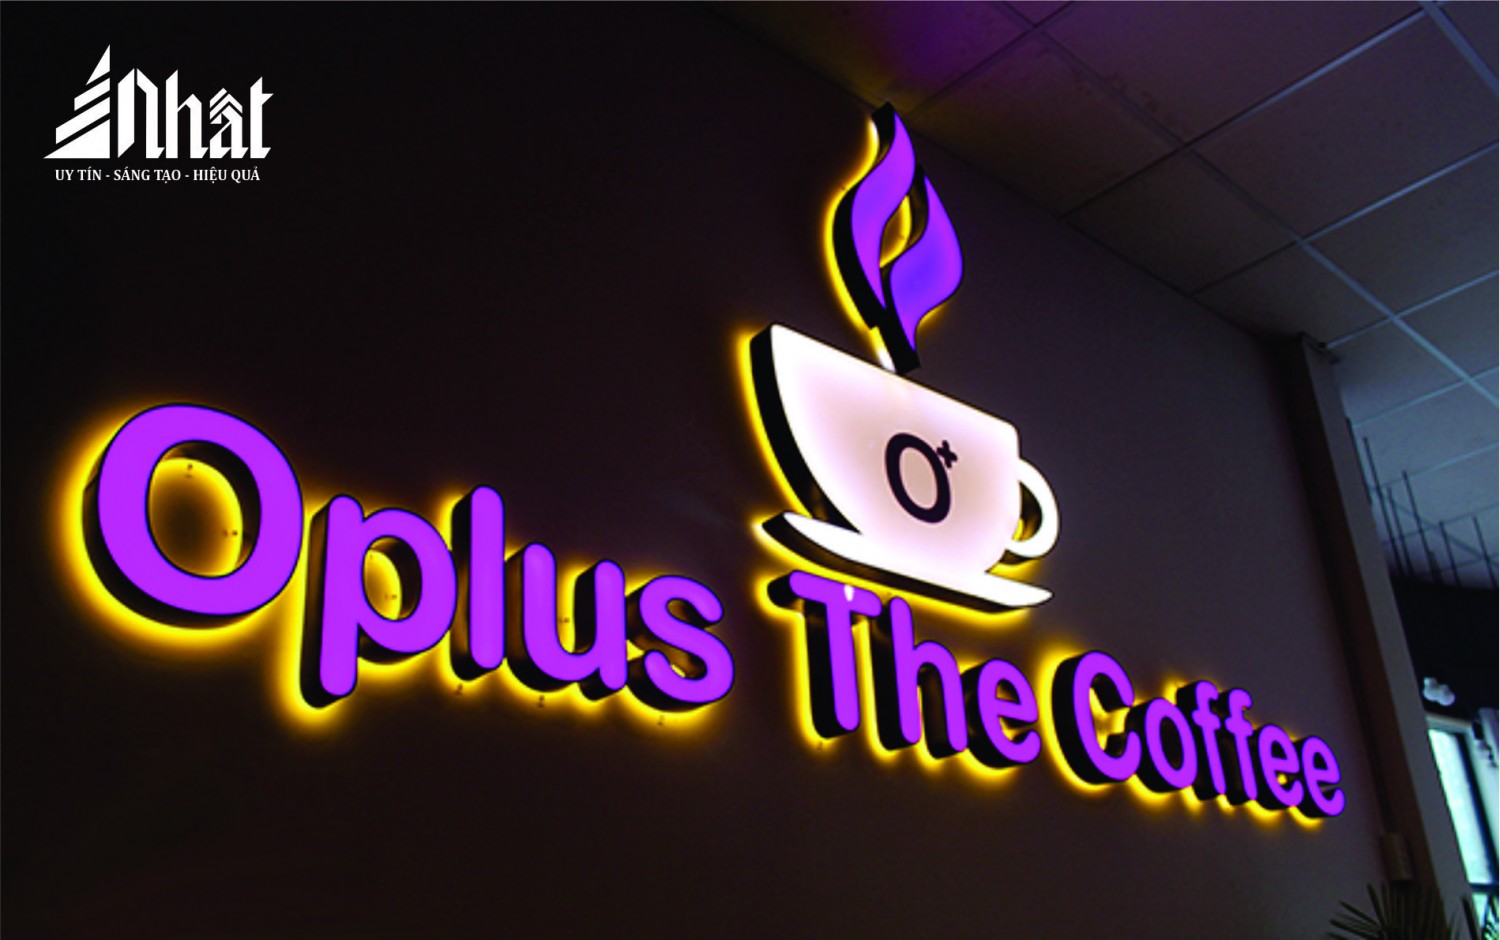 Bộ chữ quán Oplus The Coffee